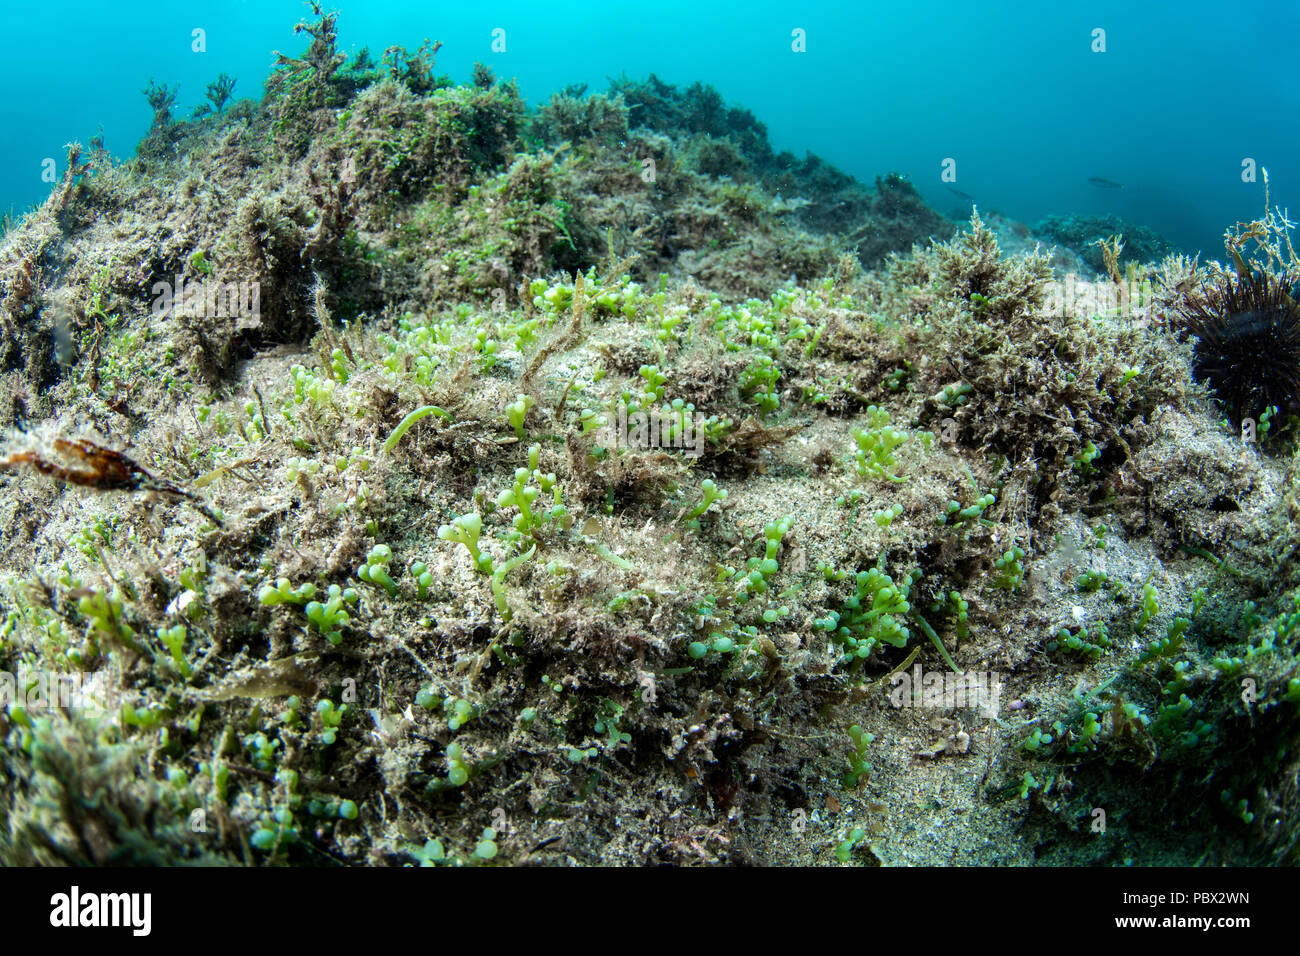 Les algues envahissantes Caulerpa tropicales (cylindracea) ex (Caulerpa racemosa) dans l'aire marine protégée de l'Agathois littoral, Hérault, France Banque D'Images